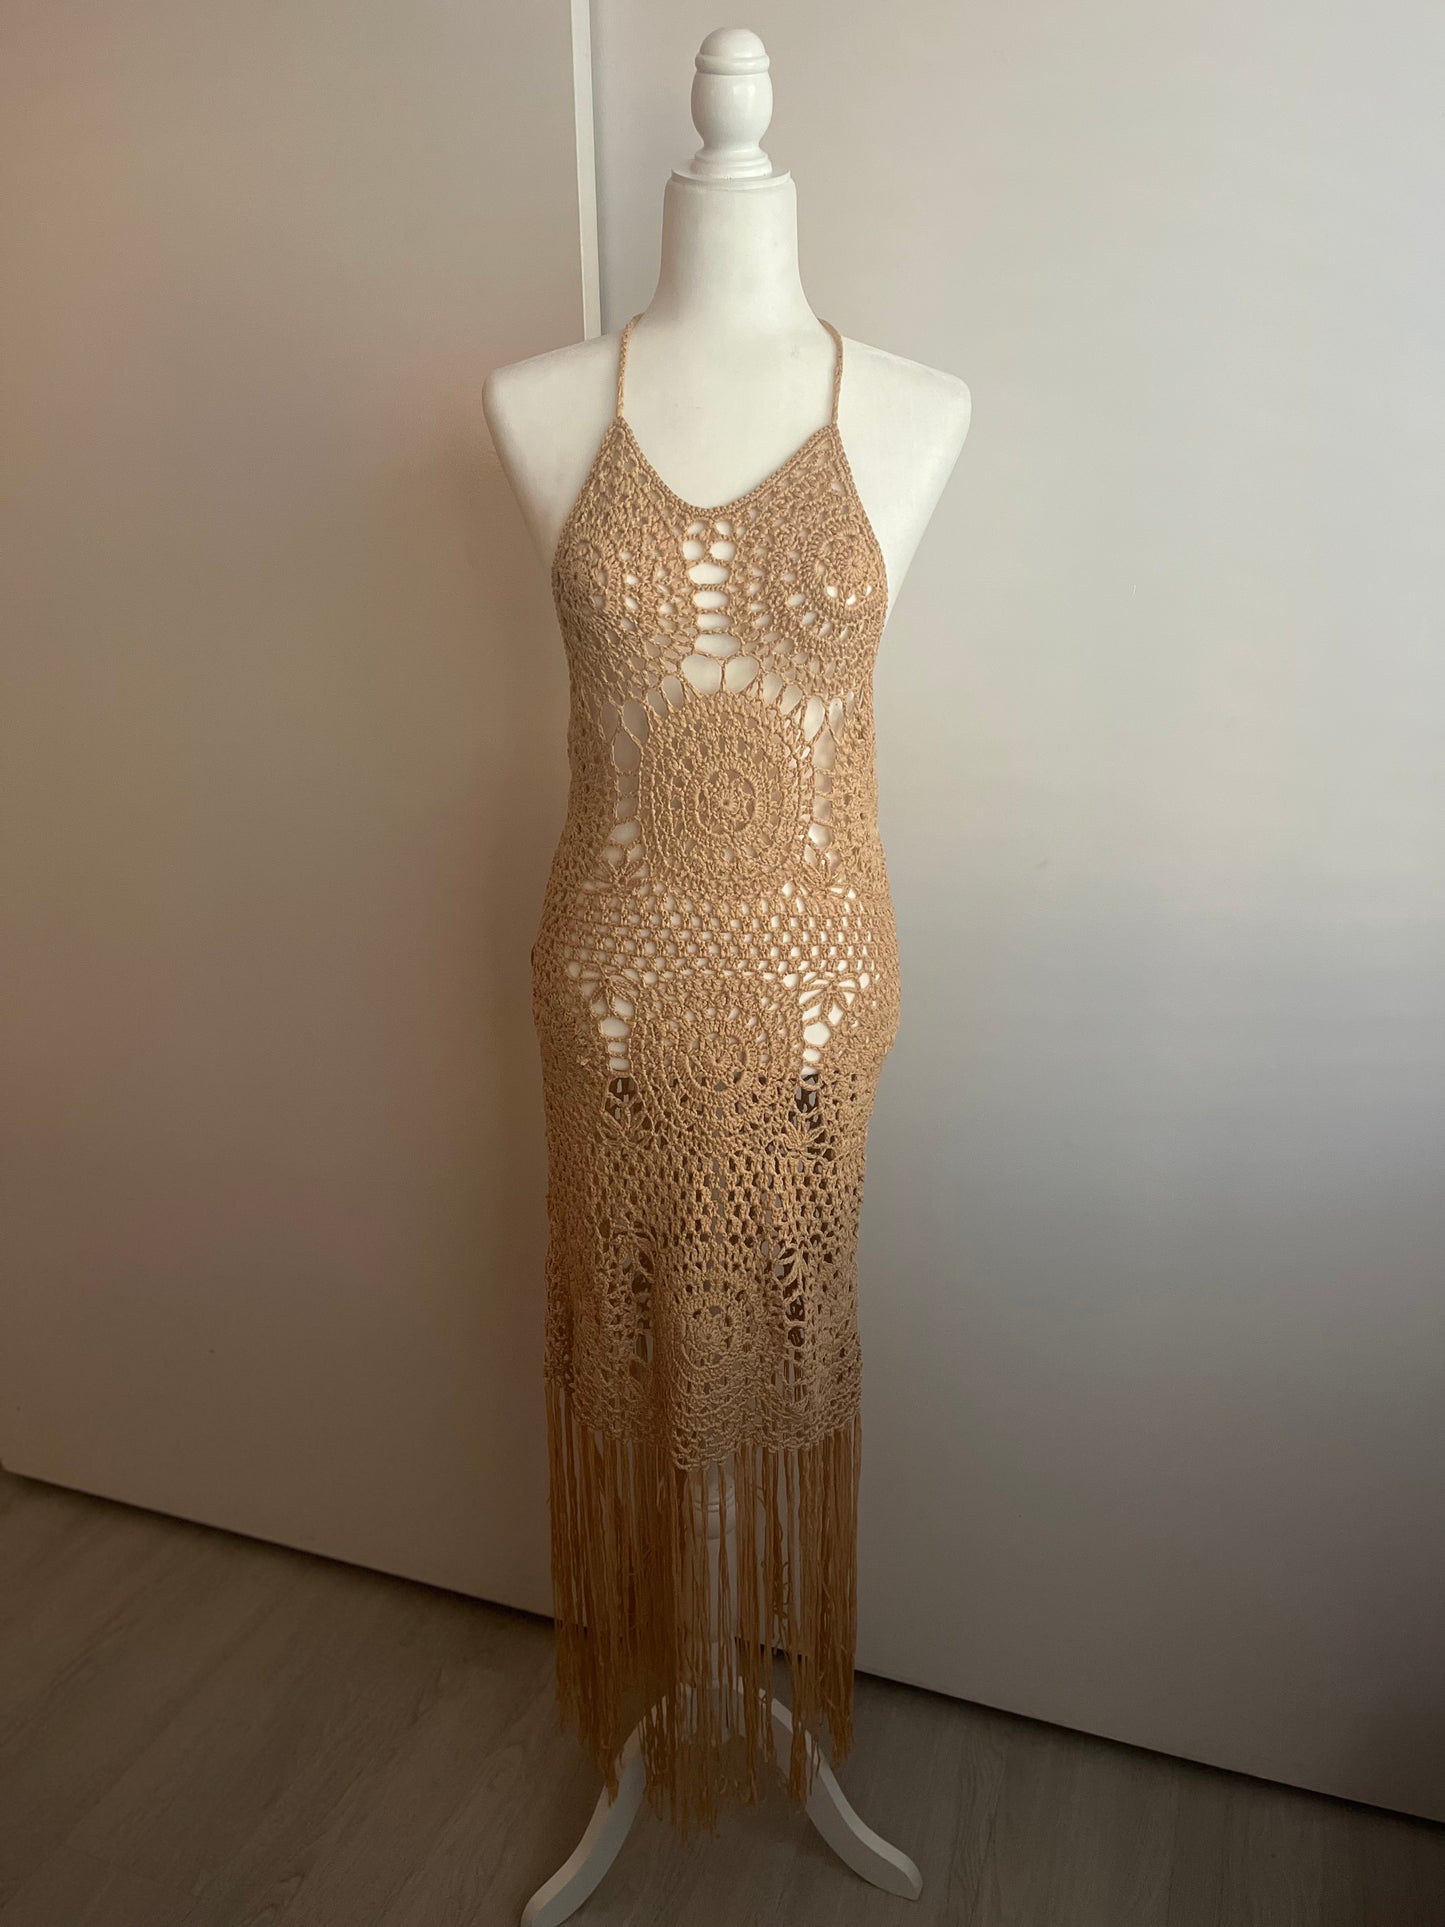 Crochet Halter Fringe Dress / Coverup